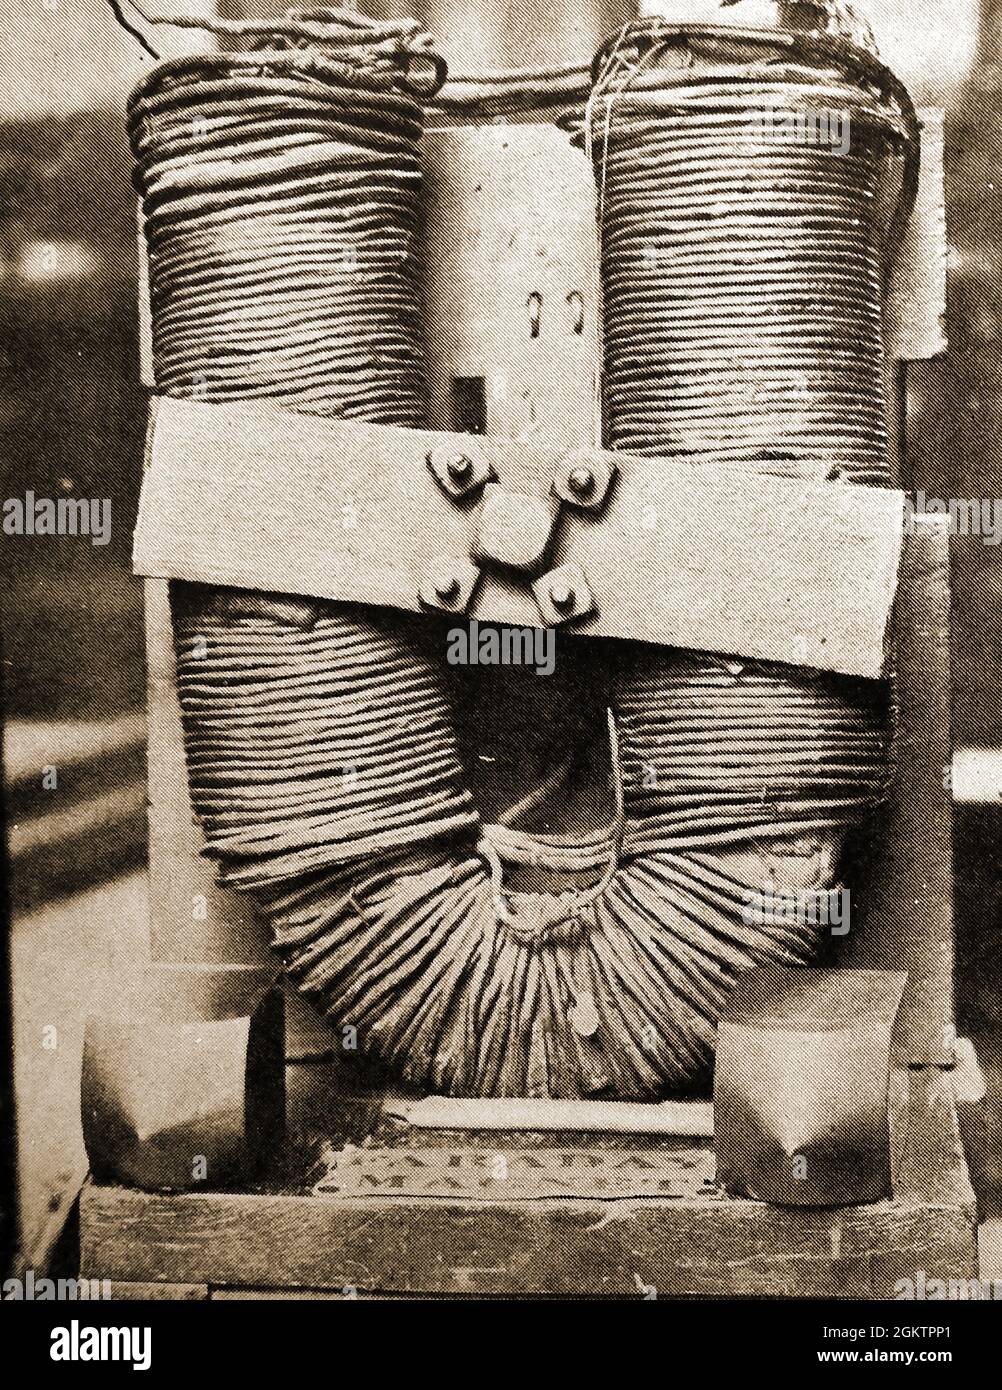 Il magnete costruito nel 1845 per Faraday da utilizzare nei suoi esperimenti . Michael Faraday (1791 – 1867) è stato uno scienziato inglese che ha avuto un ruolo di primo piano nel campo dell'elettromagnetismo e dell'elettrochimica, in particolare nell'induzione elettromagnetica, del diamagnetismo e dell'elettrolisi. Il suo lavoro ha contribuito allo sviluppo della tecnologia dei motori attraverso la sua invenzione di dispositivi rotanti elettromagnetici Foto Stock